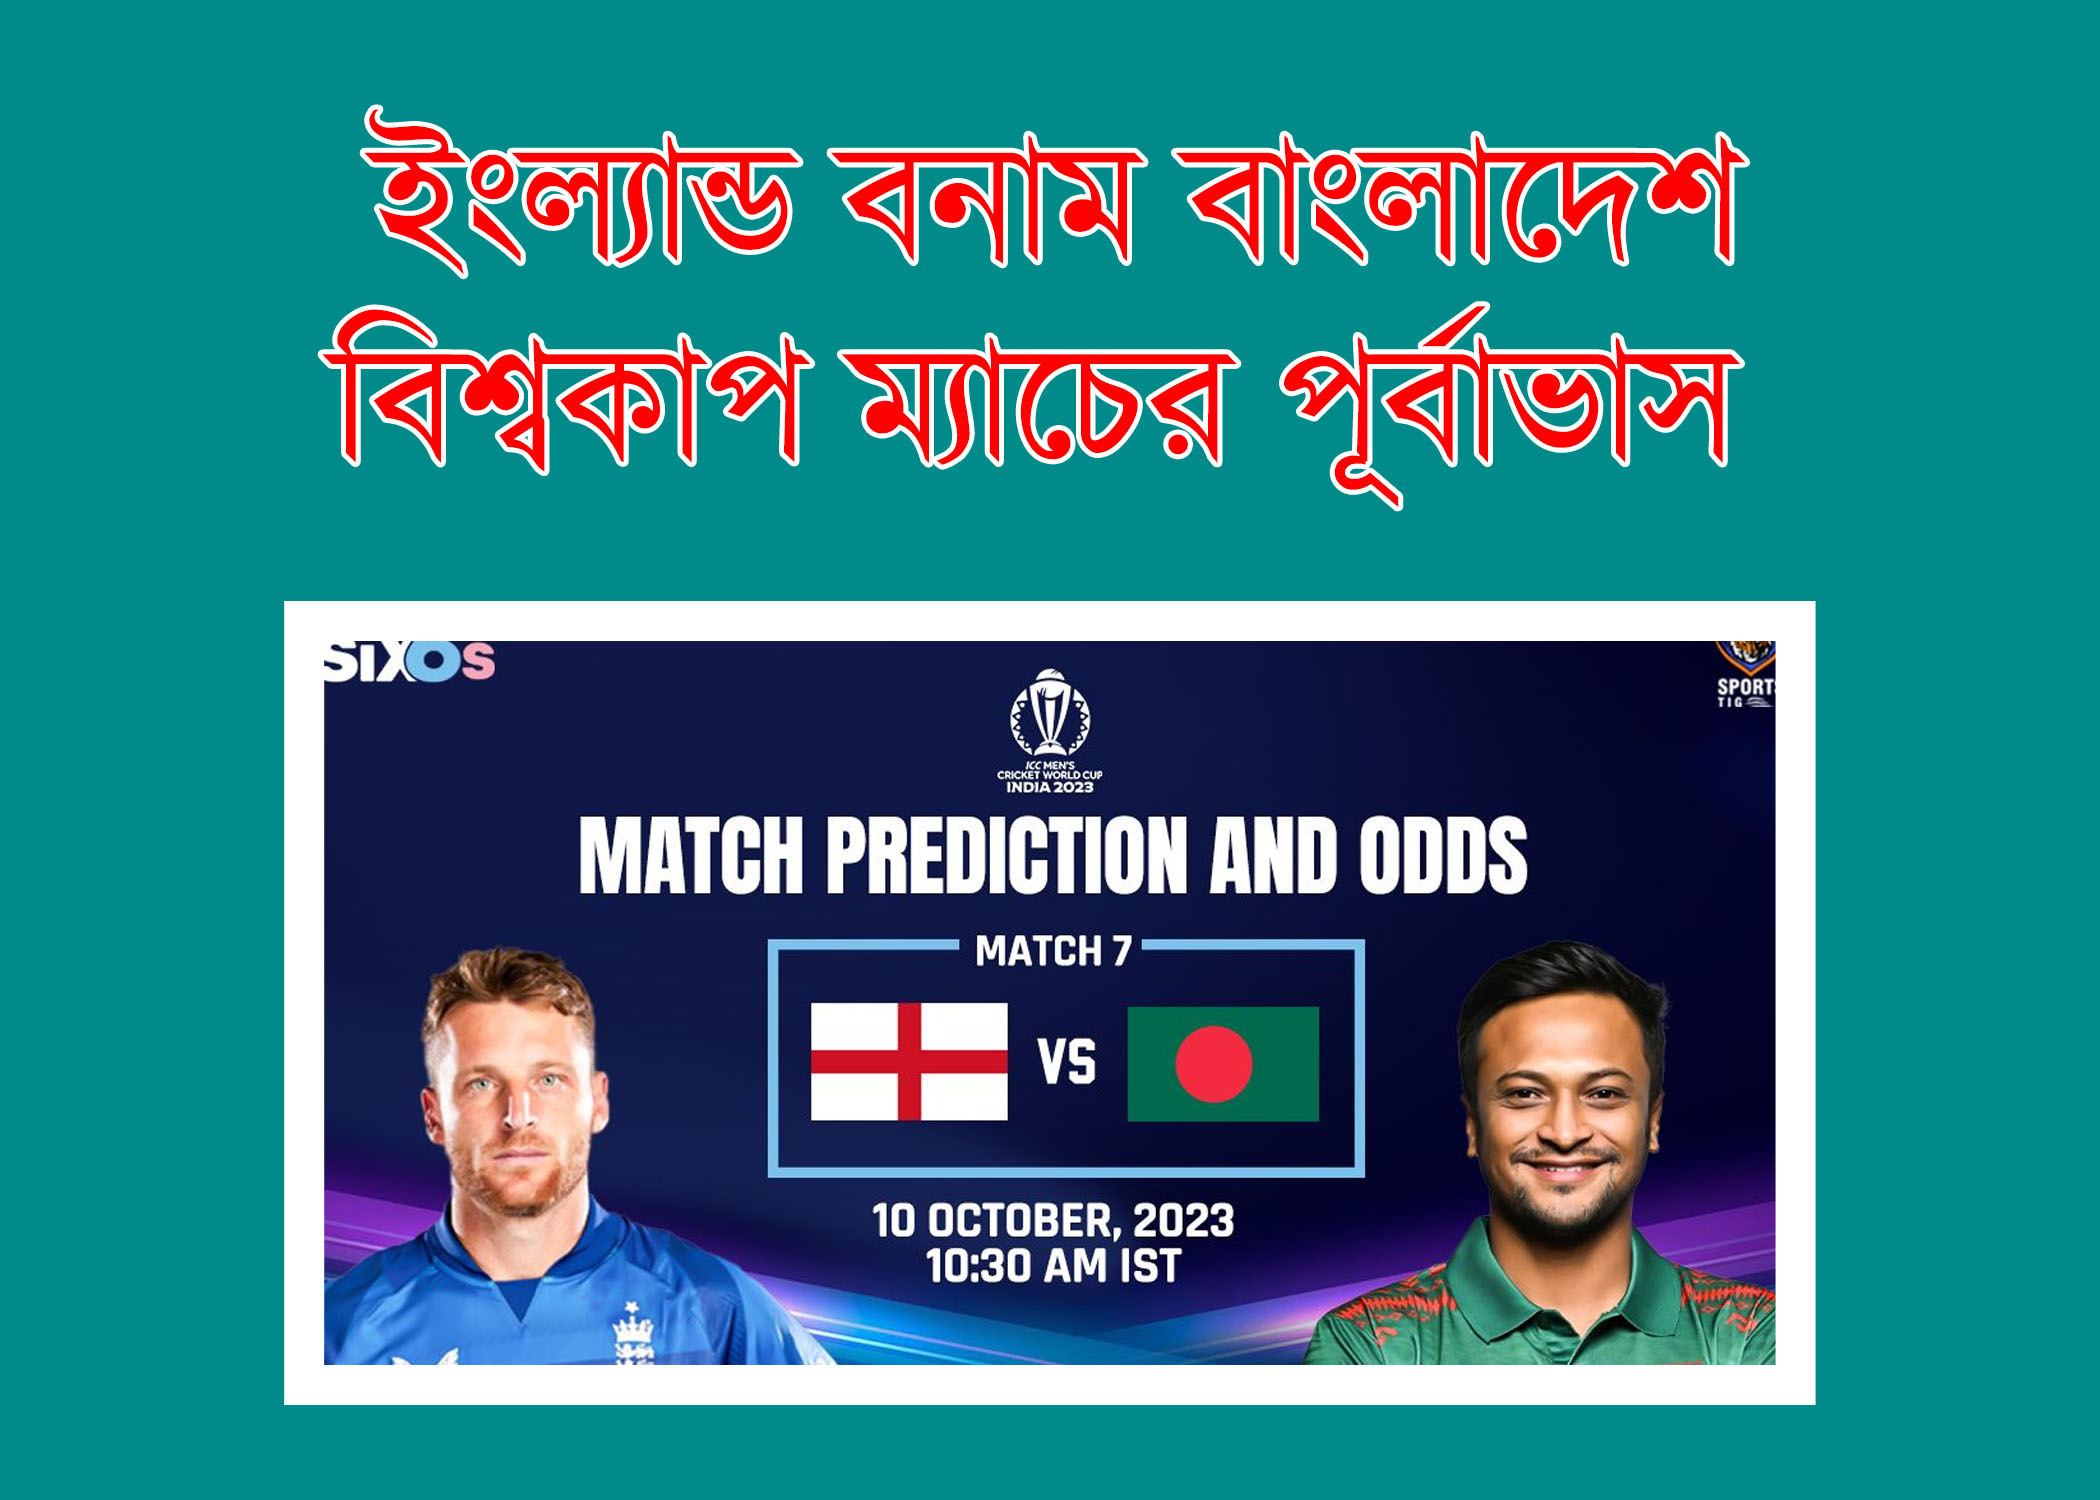 ইংল্যান্ড বনাম বাংলাদেশ ম্যাচের ভবিষ্যদ্বাণী, ইংল্যান্ড বনাম বাংলাদেশ বিশ্বকাপ 2023 ম্যাচের পূর্বাভাস - কে জিতবে ENG বনাম BAN ম্যাচ?, England vs Bangladesh World Cup 2023 Match Prediction, eng vs ban dream11 prediction,england vs bangladesh dream11 prediction,england vs bangladesh,england vs bangladesh dream11 team,world cup 2023,ban vs eng dream11 prediction,eng vs ban dream11 prediction today match,eng vs ban dream11 team,bangladesh vs england,eng vs ban dream11 team prediction,england vs bangladesh 2023,today match prediction,eng vs ban,eng vs ban dream11,dream11 prediction,world cup 2023 prediction,england vs bangladesh dream11, বাংলাদেশ বনাম ইংল্যান্ড,বাংলাদেশ বনাম ইংল্যান্ড সিরিজ ২০২৩,বাংলাদেশ বনাম ইংল্যান্ড সিরিজ,ভারত বনাম ইংল্যান্ড,বাংলাদেশ বনাম ইংল্যান্ড ওয়ানডে সিরিজ ২০২৩,বাংলাদেশ বনাম ইংল্যান্ড টি-টোয়েন্টি সিরিজ ২০২৩,বাংলাদেশ বনাম ইংল্যান্ড সিরিজ ২০২৩ - পূর্নাঙ্গ সময়সূচি,icc world cup 2023,ভারত বনাম ইংল্যান্ড লাইভ,ওডিআই বিশ্বকাপ 2023,বাংলাদেশ বনাম আফগানিস্তান,world cup 2023,বিশ্বকাপ লাইভ,বিশ্বকাপ ২০২৩,বাংলাদেশের ম্যাচ,বাংলাদেশ ক্রিকেট নিউজ,বাংলাদেশ ক্রিকেট লাইভ, world cup 2023,today match prediction,world cup 2023 prediction,world cup 2023 match prediction,world cup 2023 today match prediction,icc cricket world cup 2023,icc cricket world cup 2023 prediction,world cup 2023 win prediction,cricket world cup 2023 prediction,icc world cup 2023 advance match prediction,icc world cup 2023,odi world cup 2023,rugby world cup 2023,world cup 2023 winner prediction,icc world cup 2023 schedule,world cup 2023 schedule,